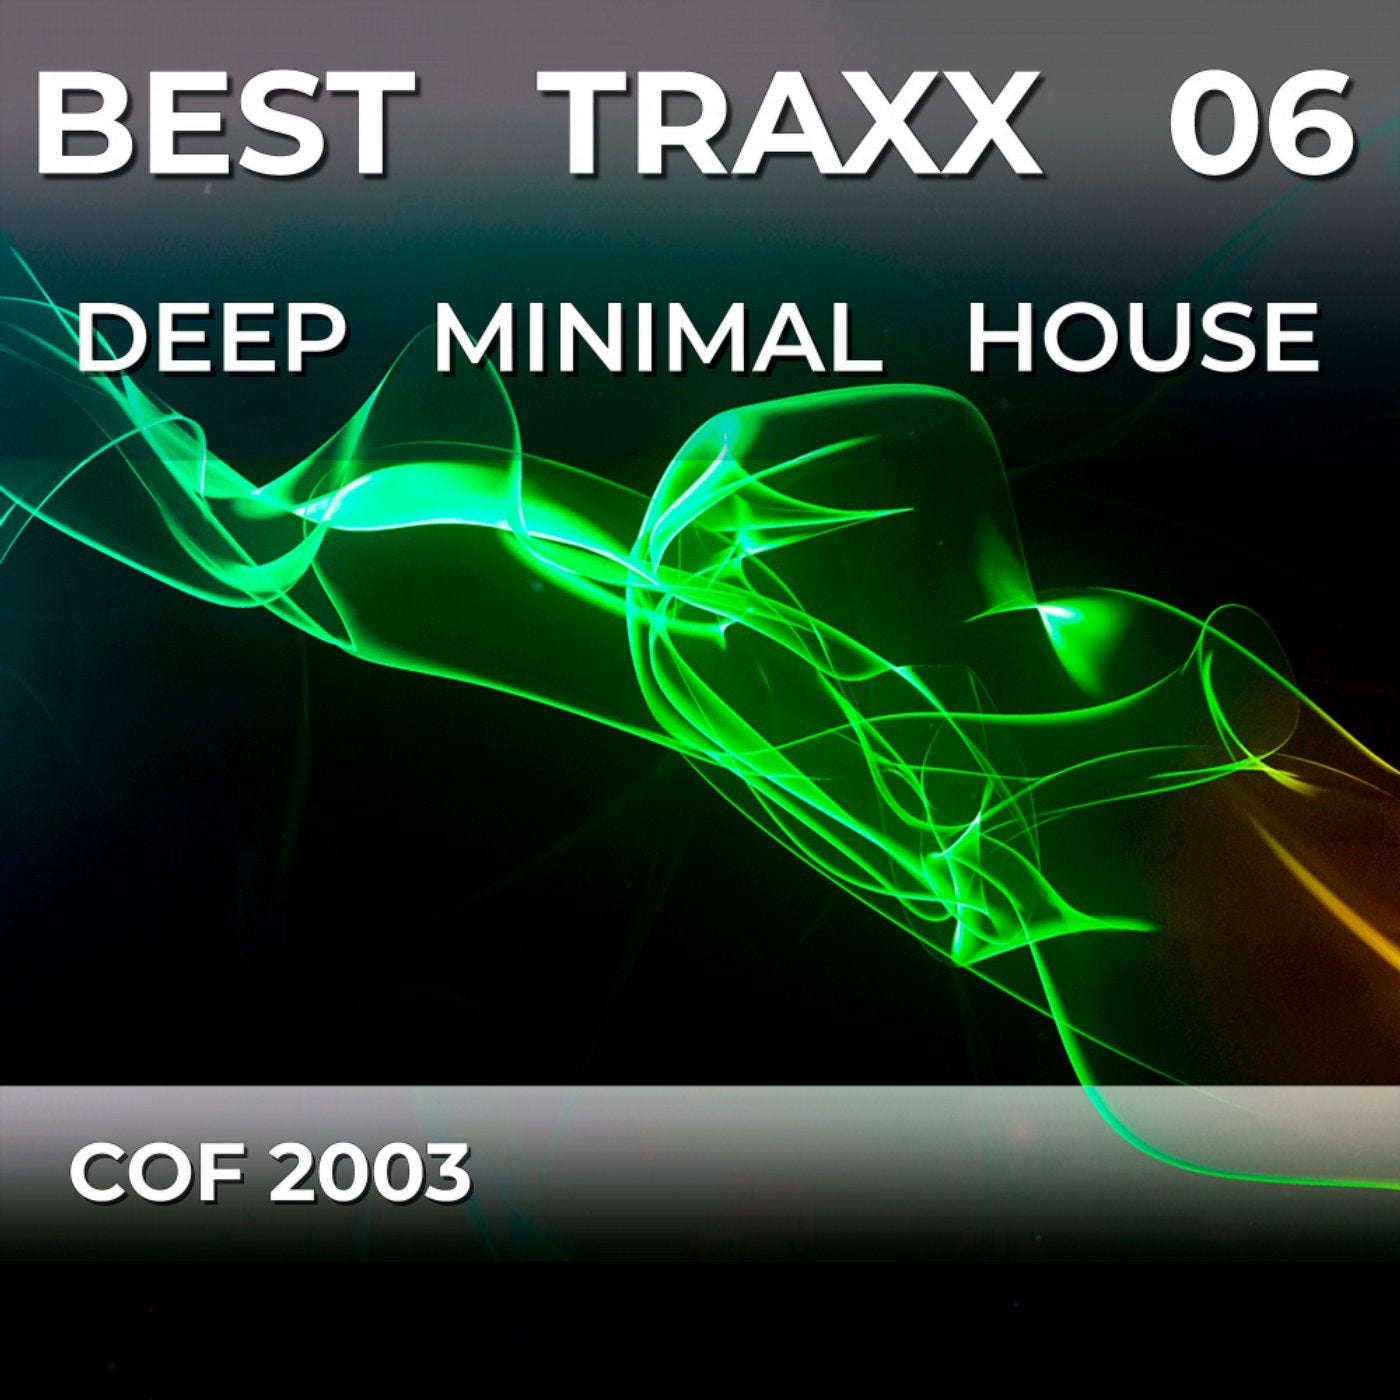 Best Traxx 06